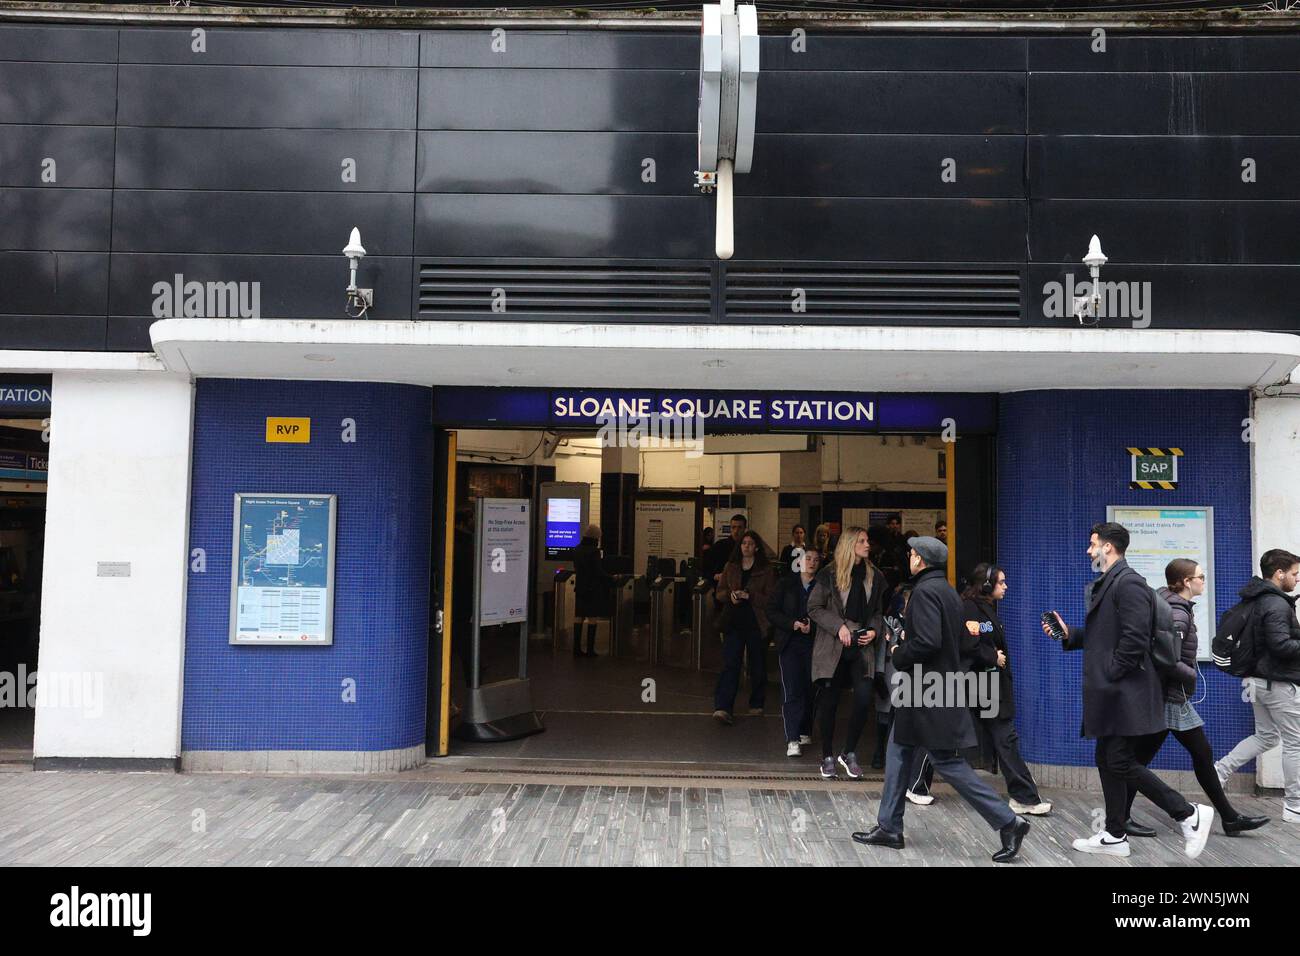 Sloane Square London Underground Station Stock Photo